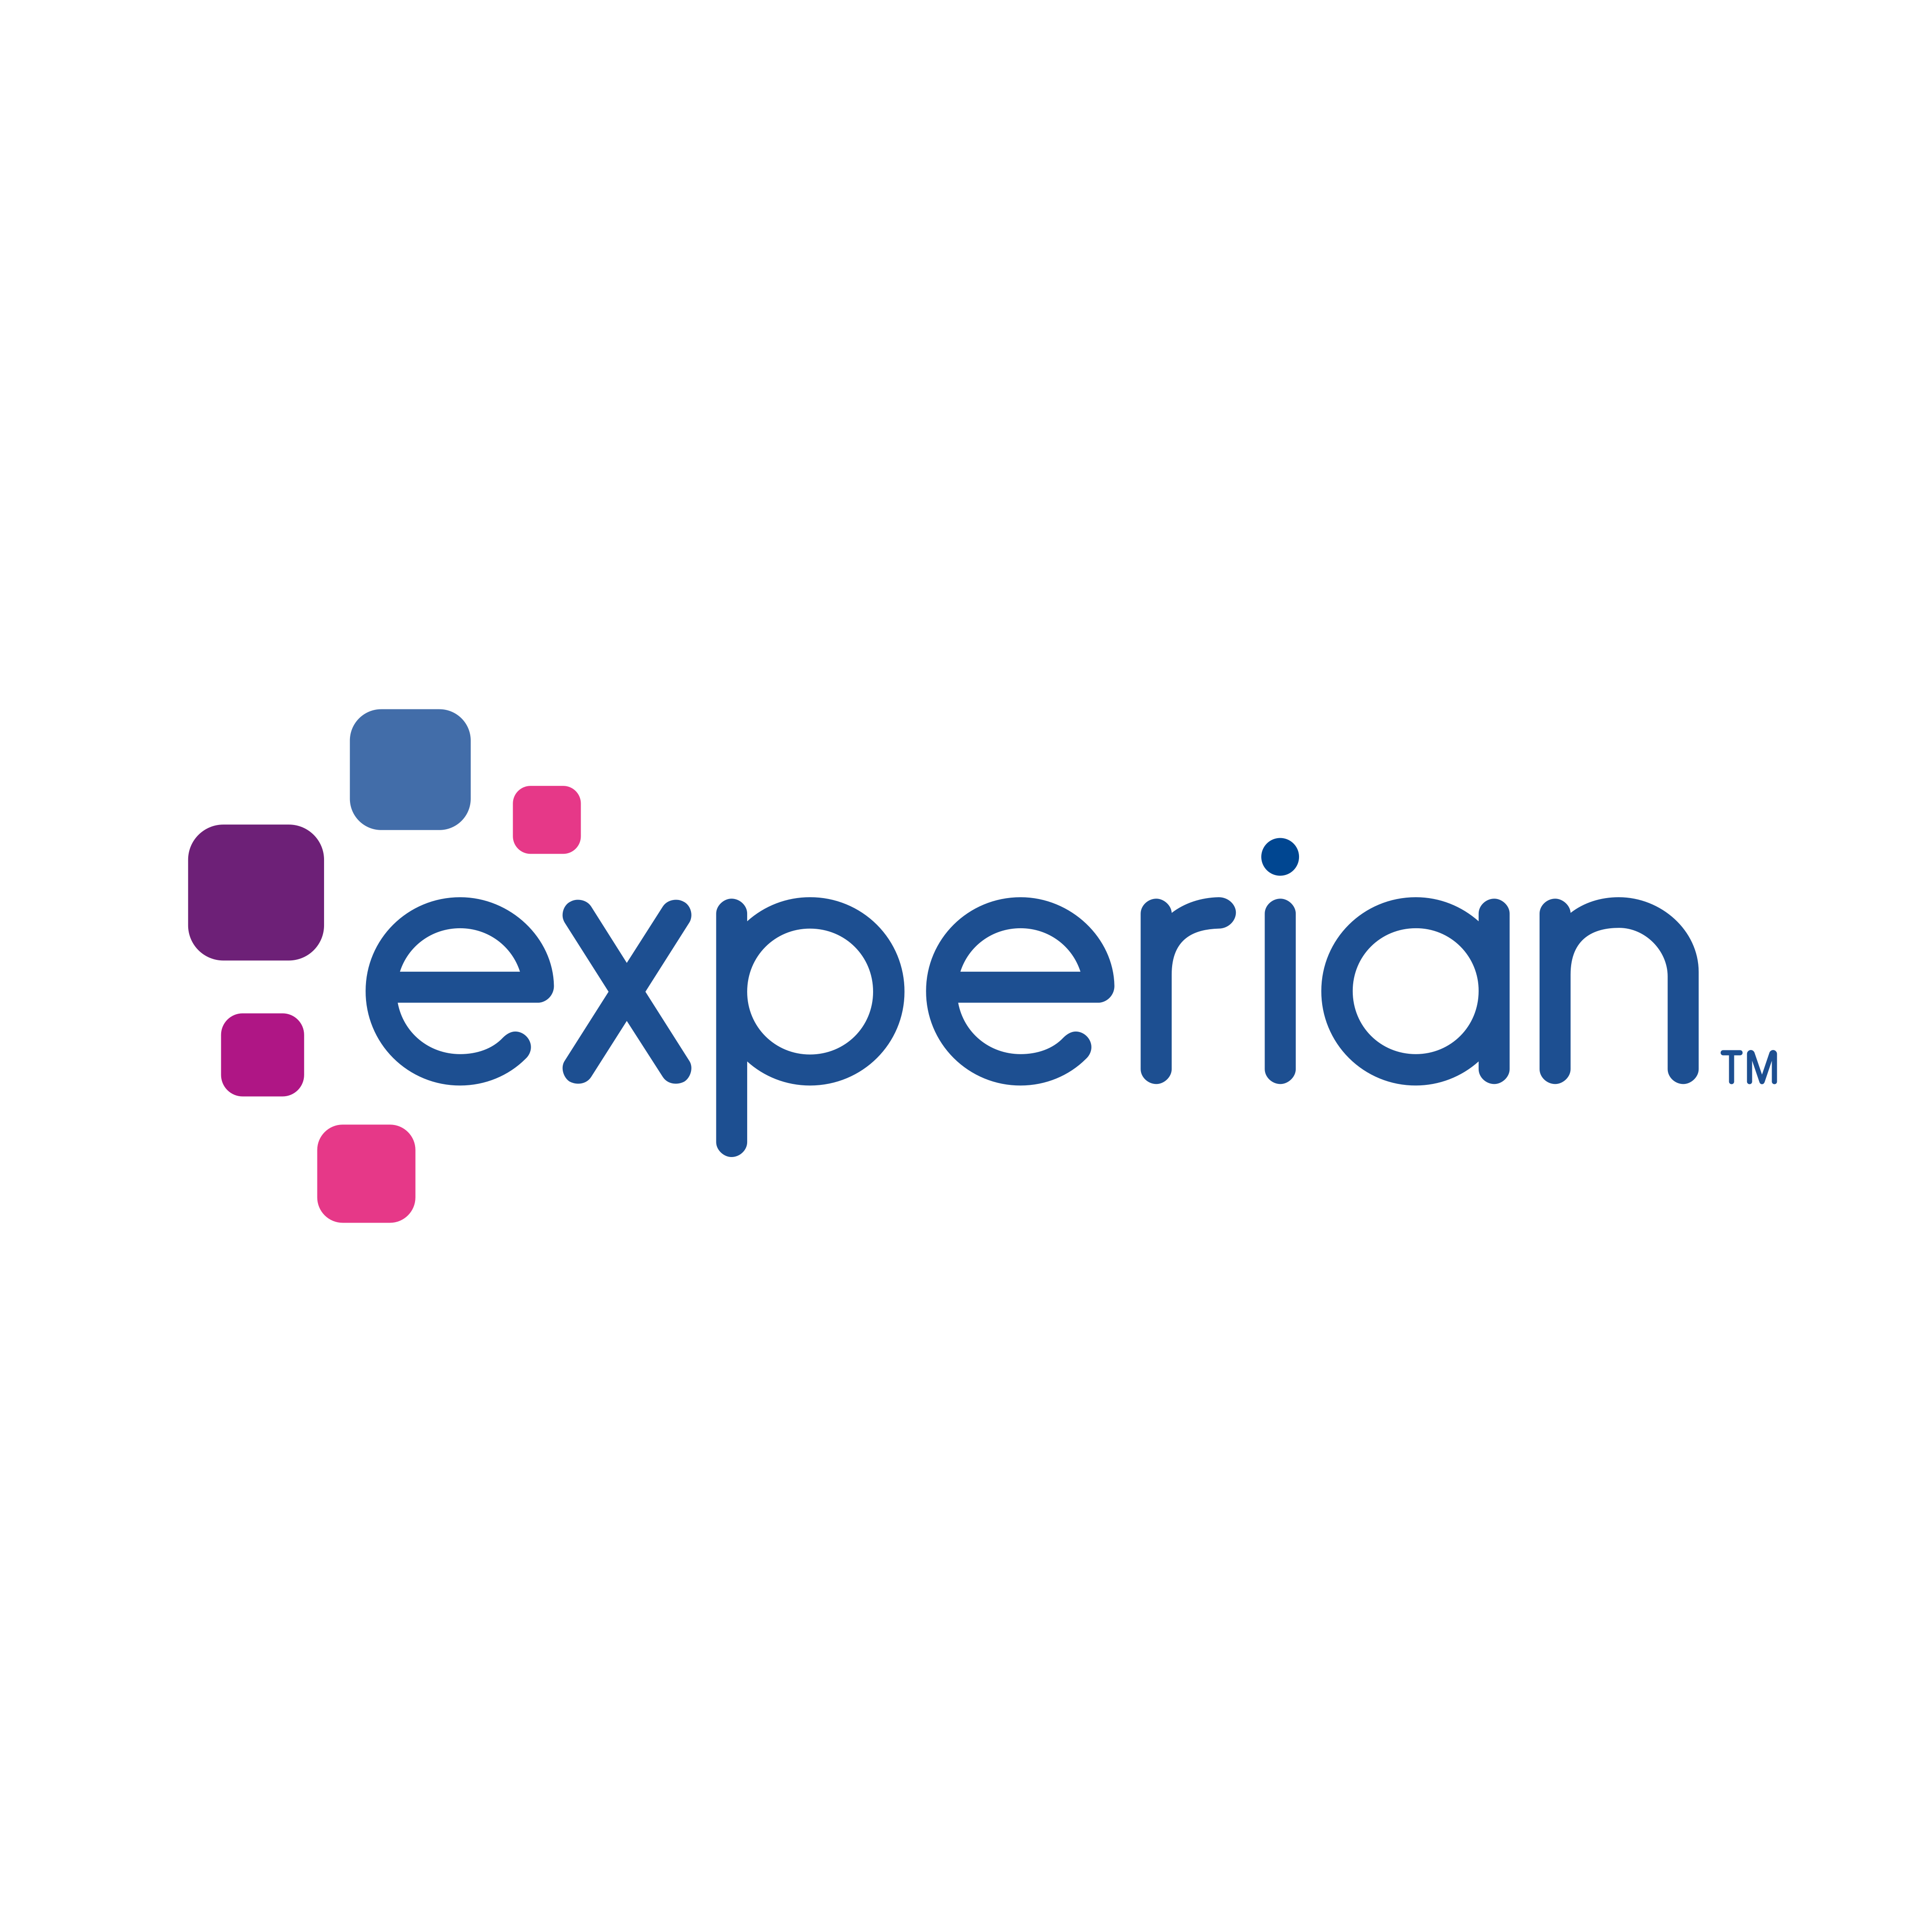 experian logo 0 - Experian Logo